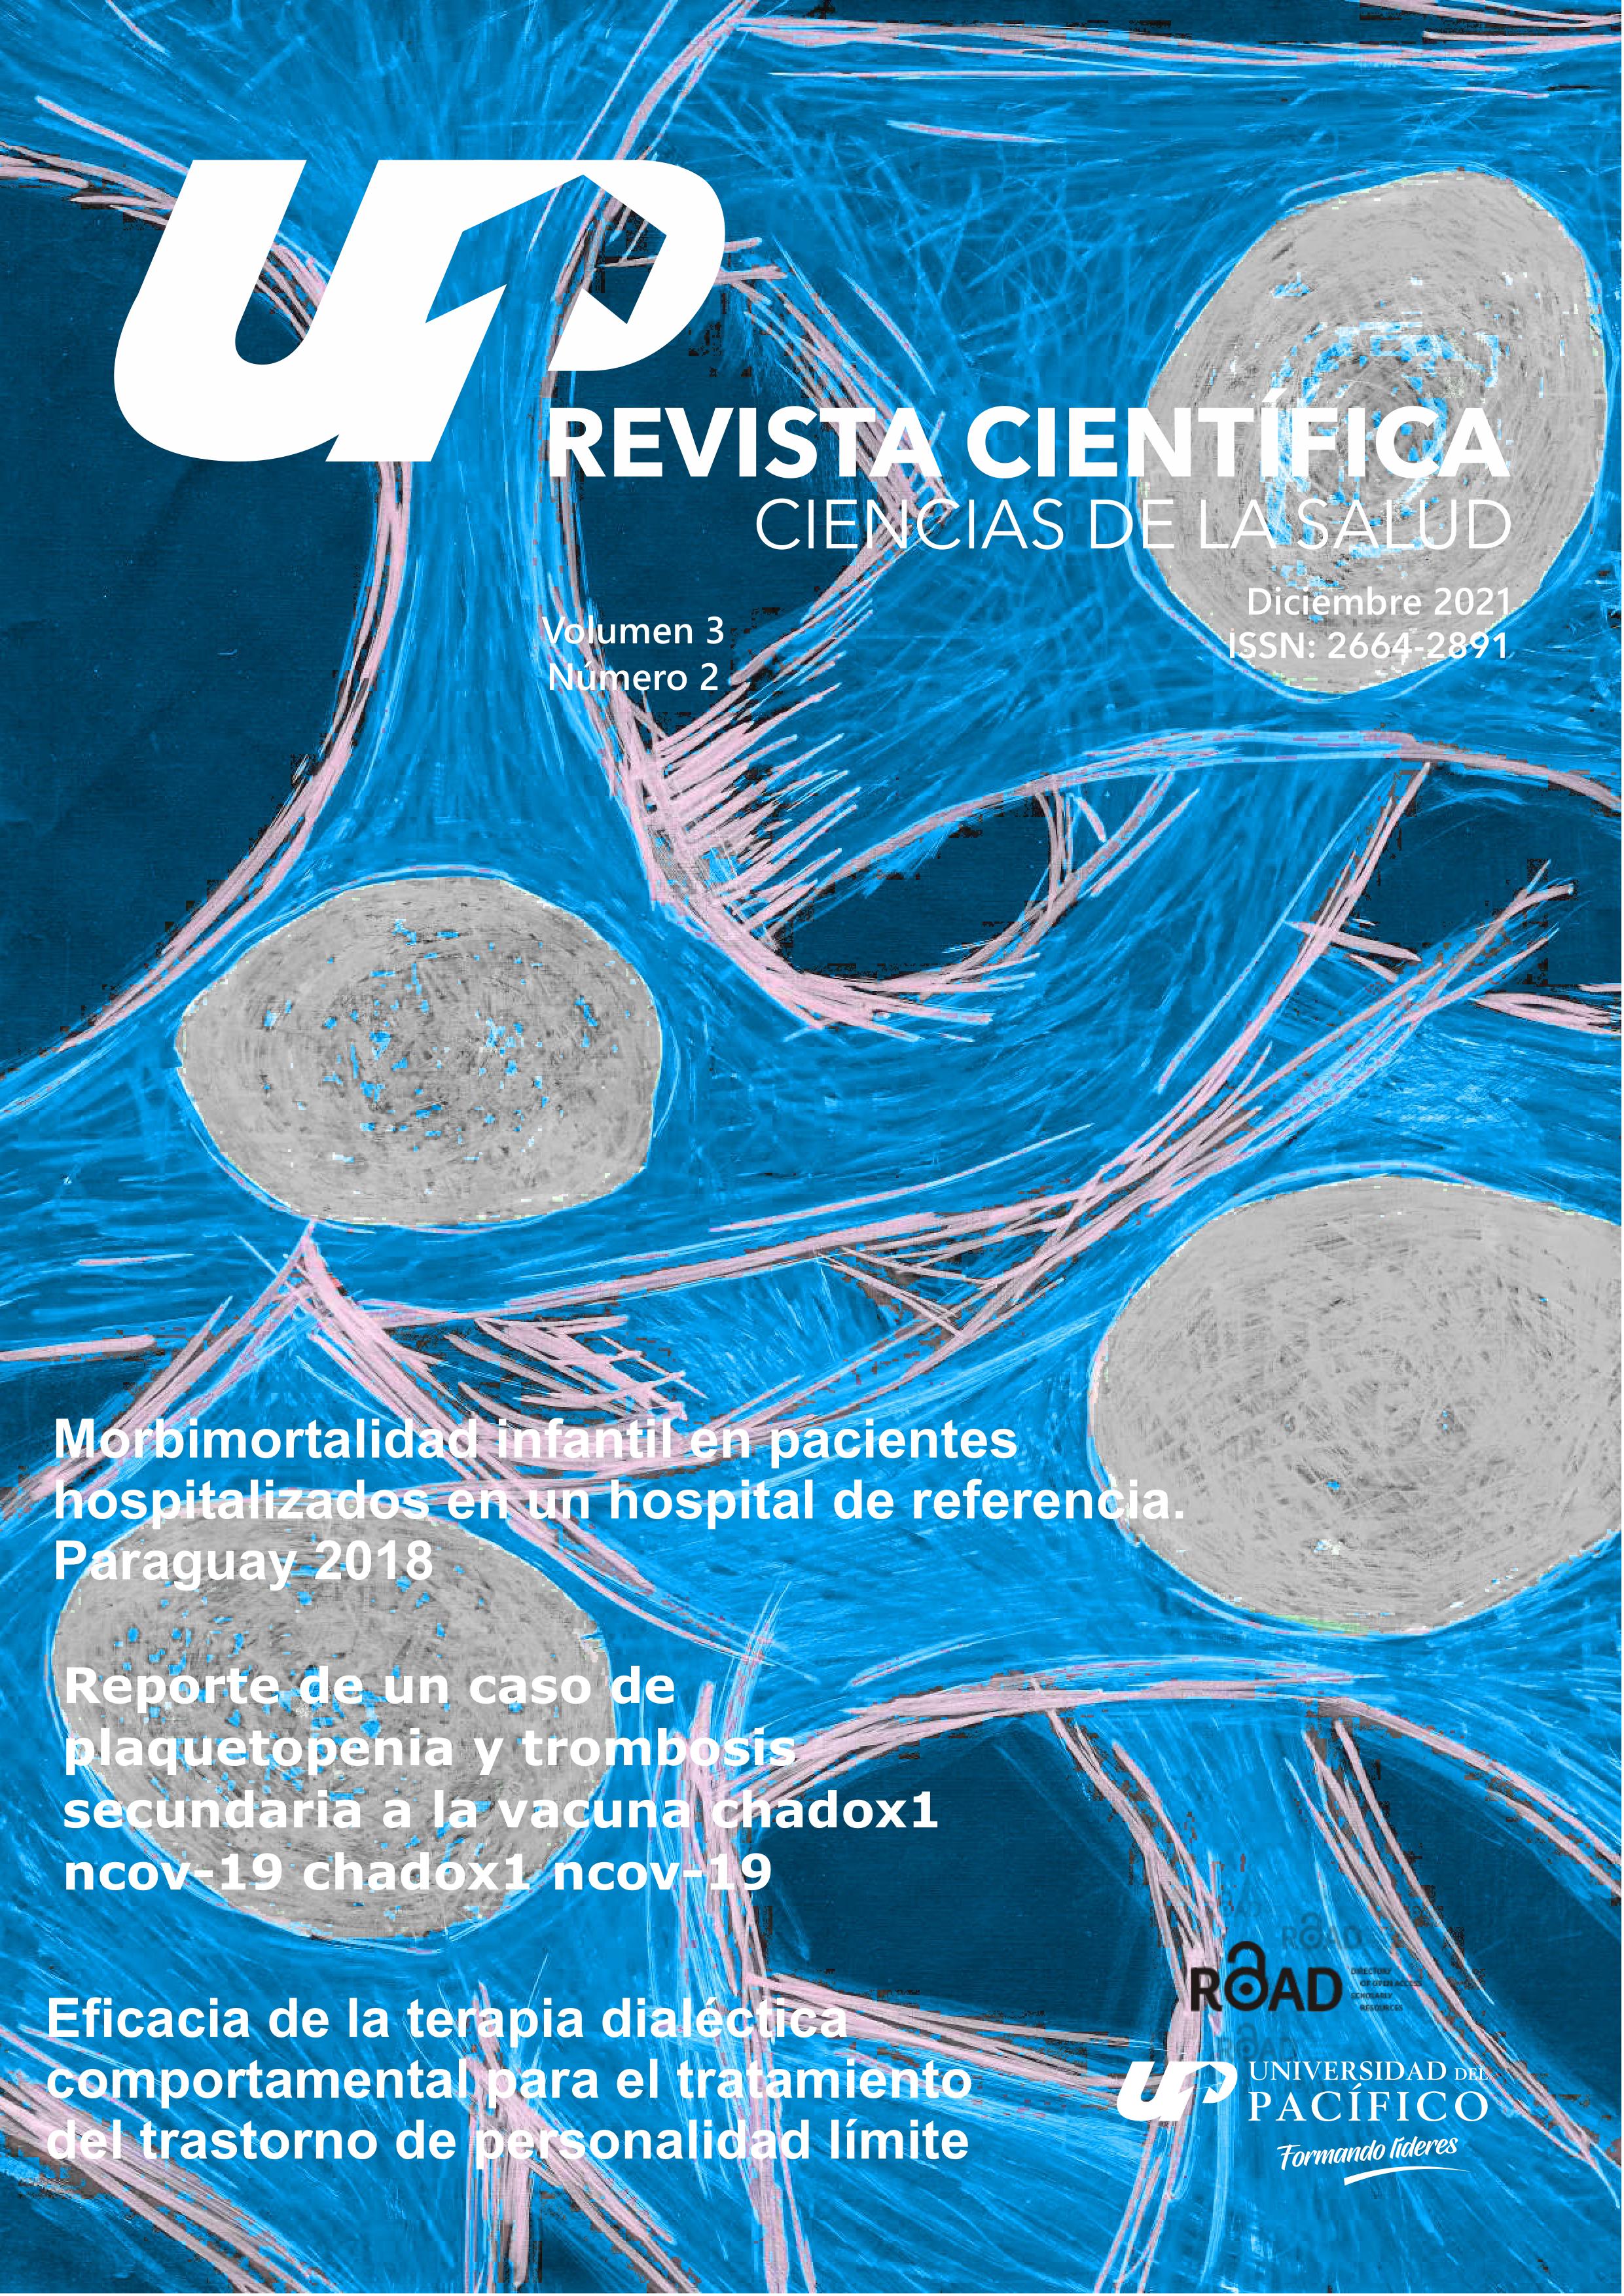 					View Vol. 3 No. 2 (2021): Revista científica ciencias de la salud - ISSN: 2664-2891
				